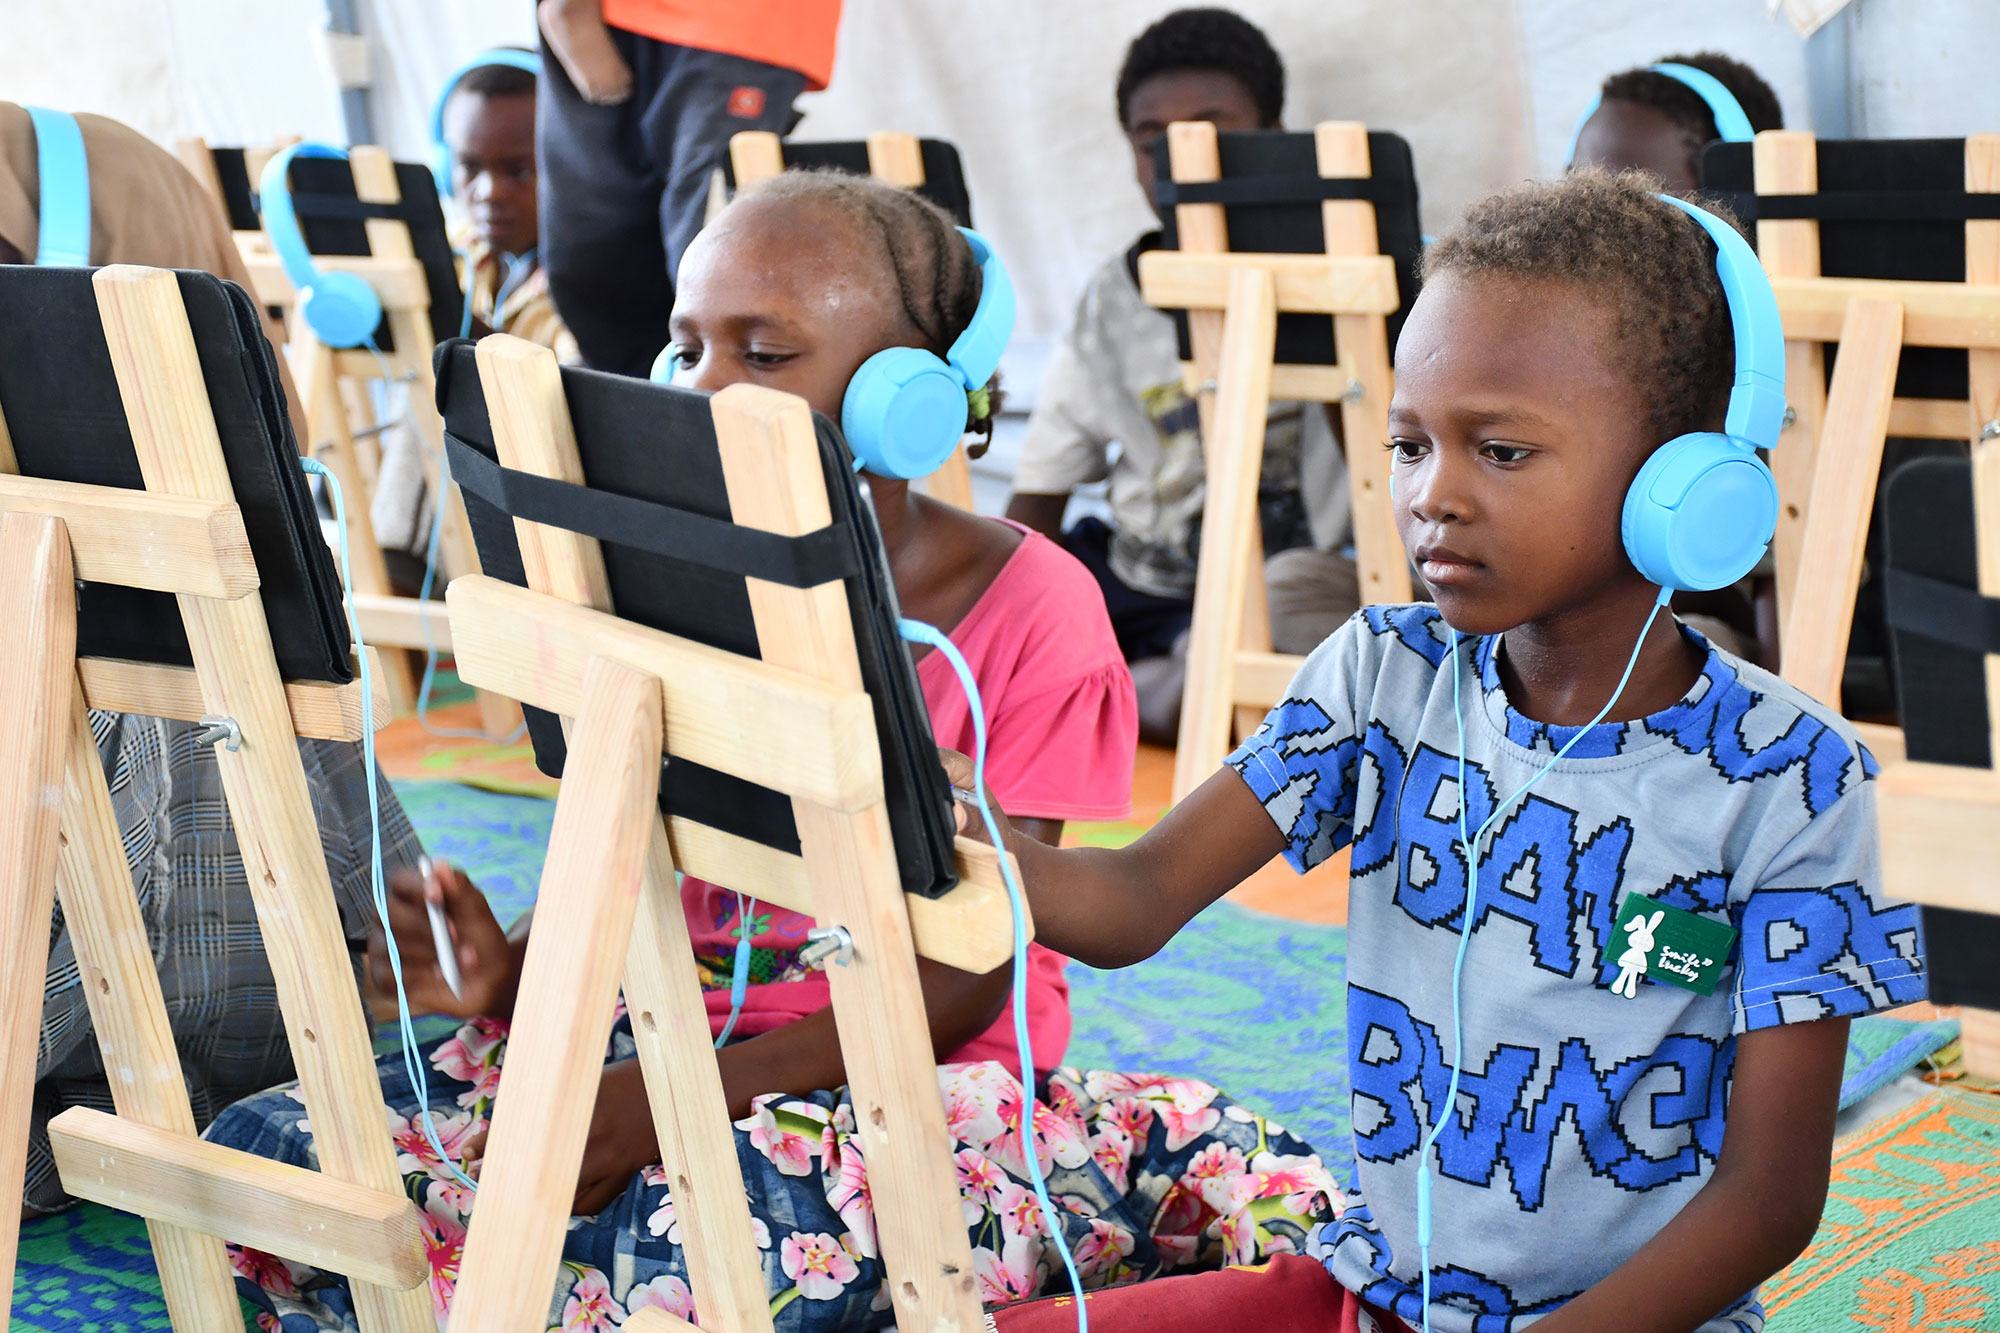 Des enfants déplacés par le conflit s'adonnent à l'apprentissage numérique dans un espace d'apprentissage sécurisé à Port-Soudan.